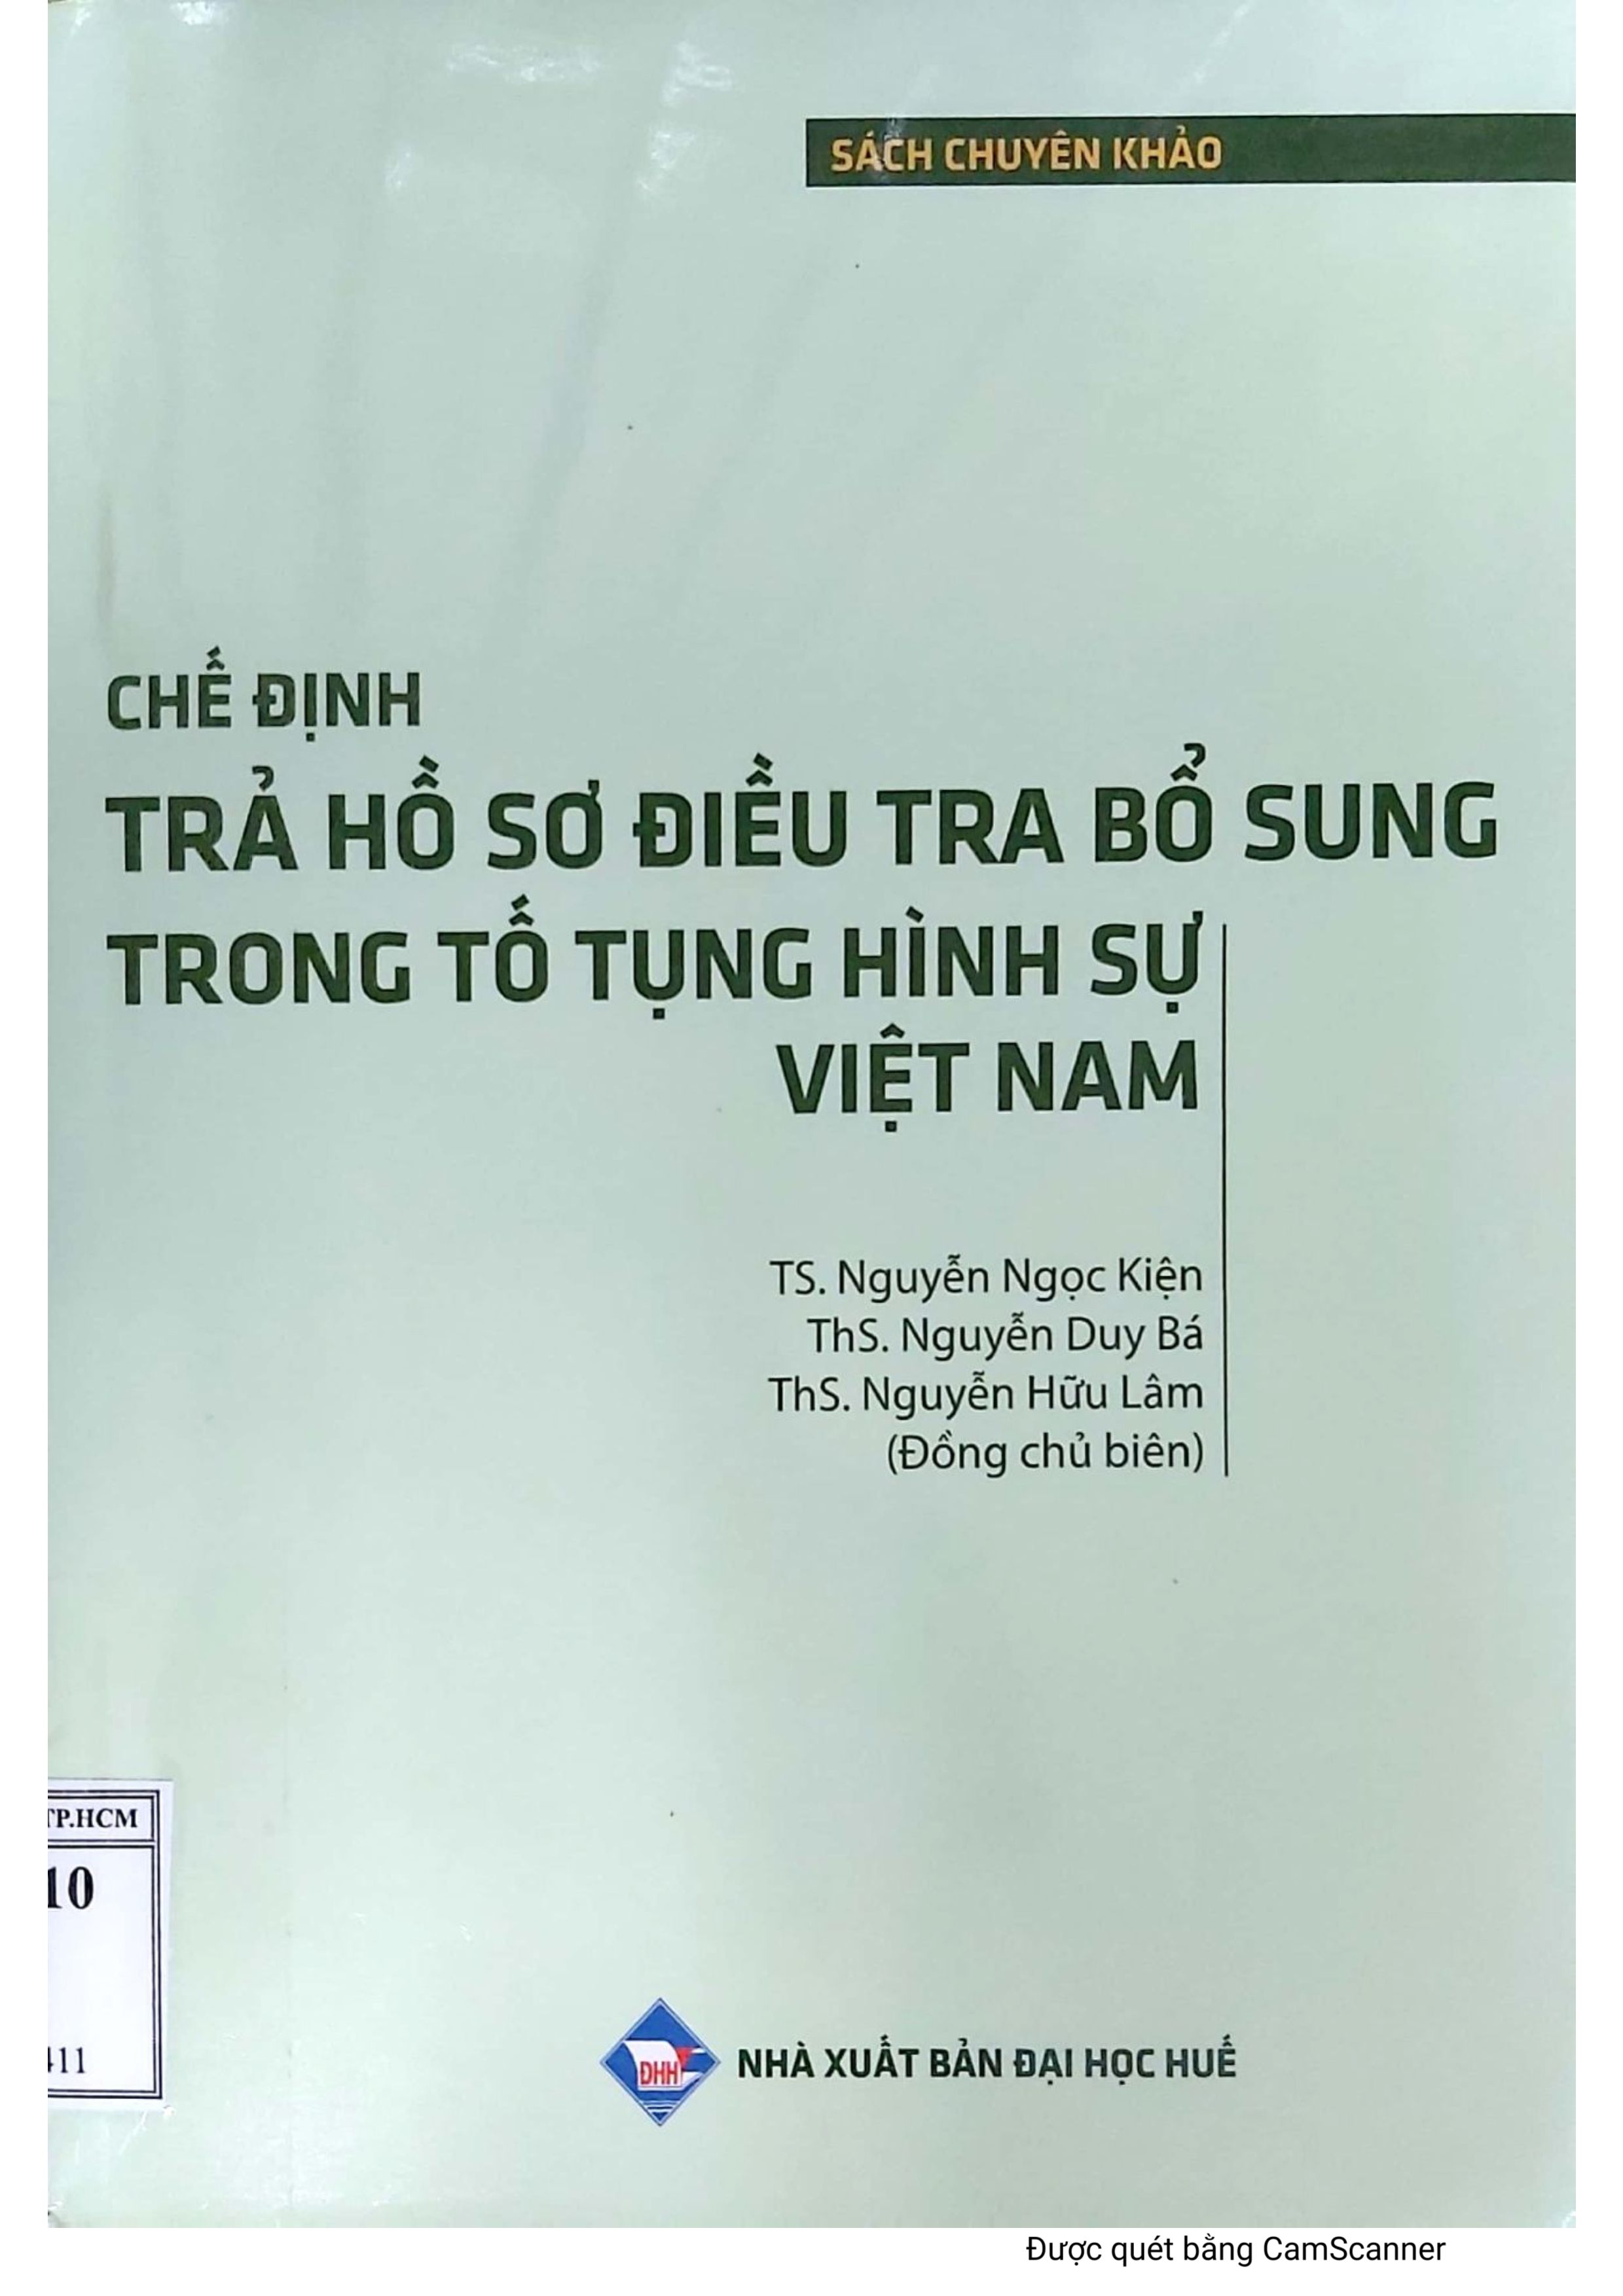 Chế định trả hồ sơ điều tra bổ sung trong tố ụng hình sự Việt Nam